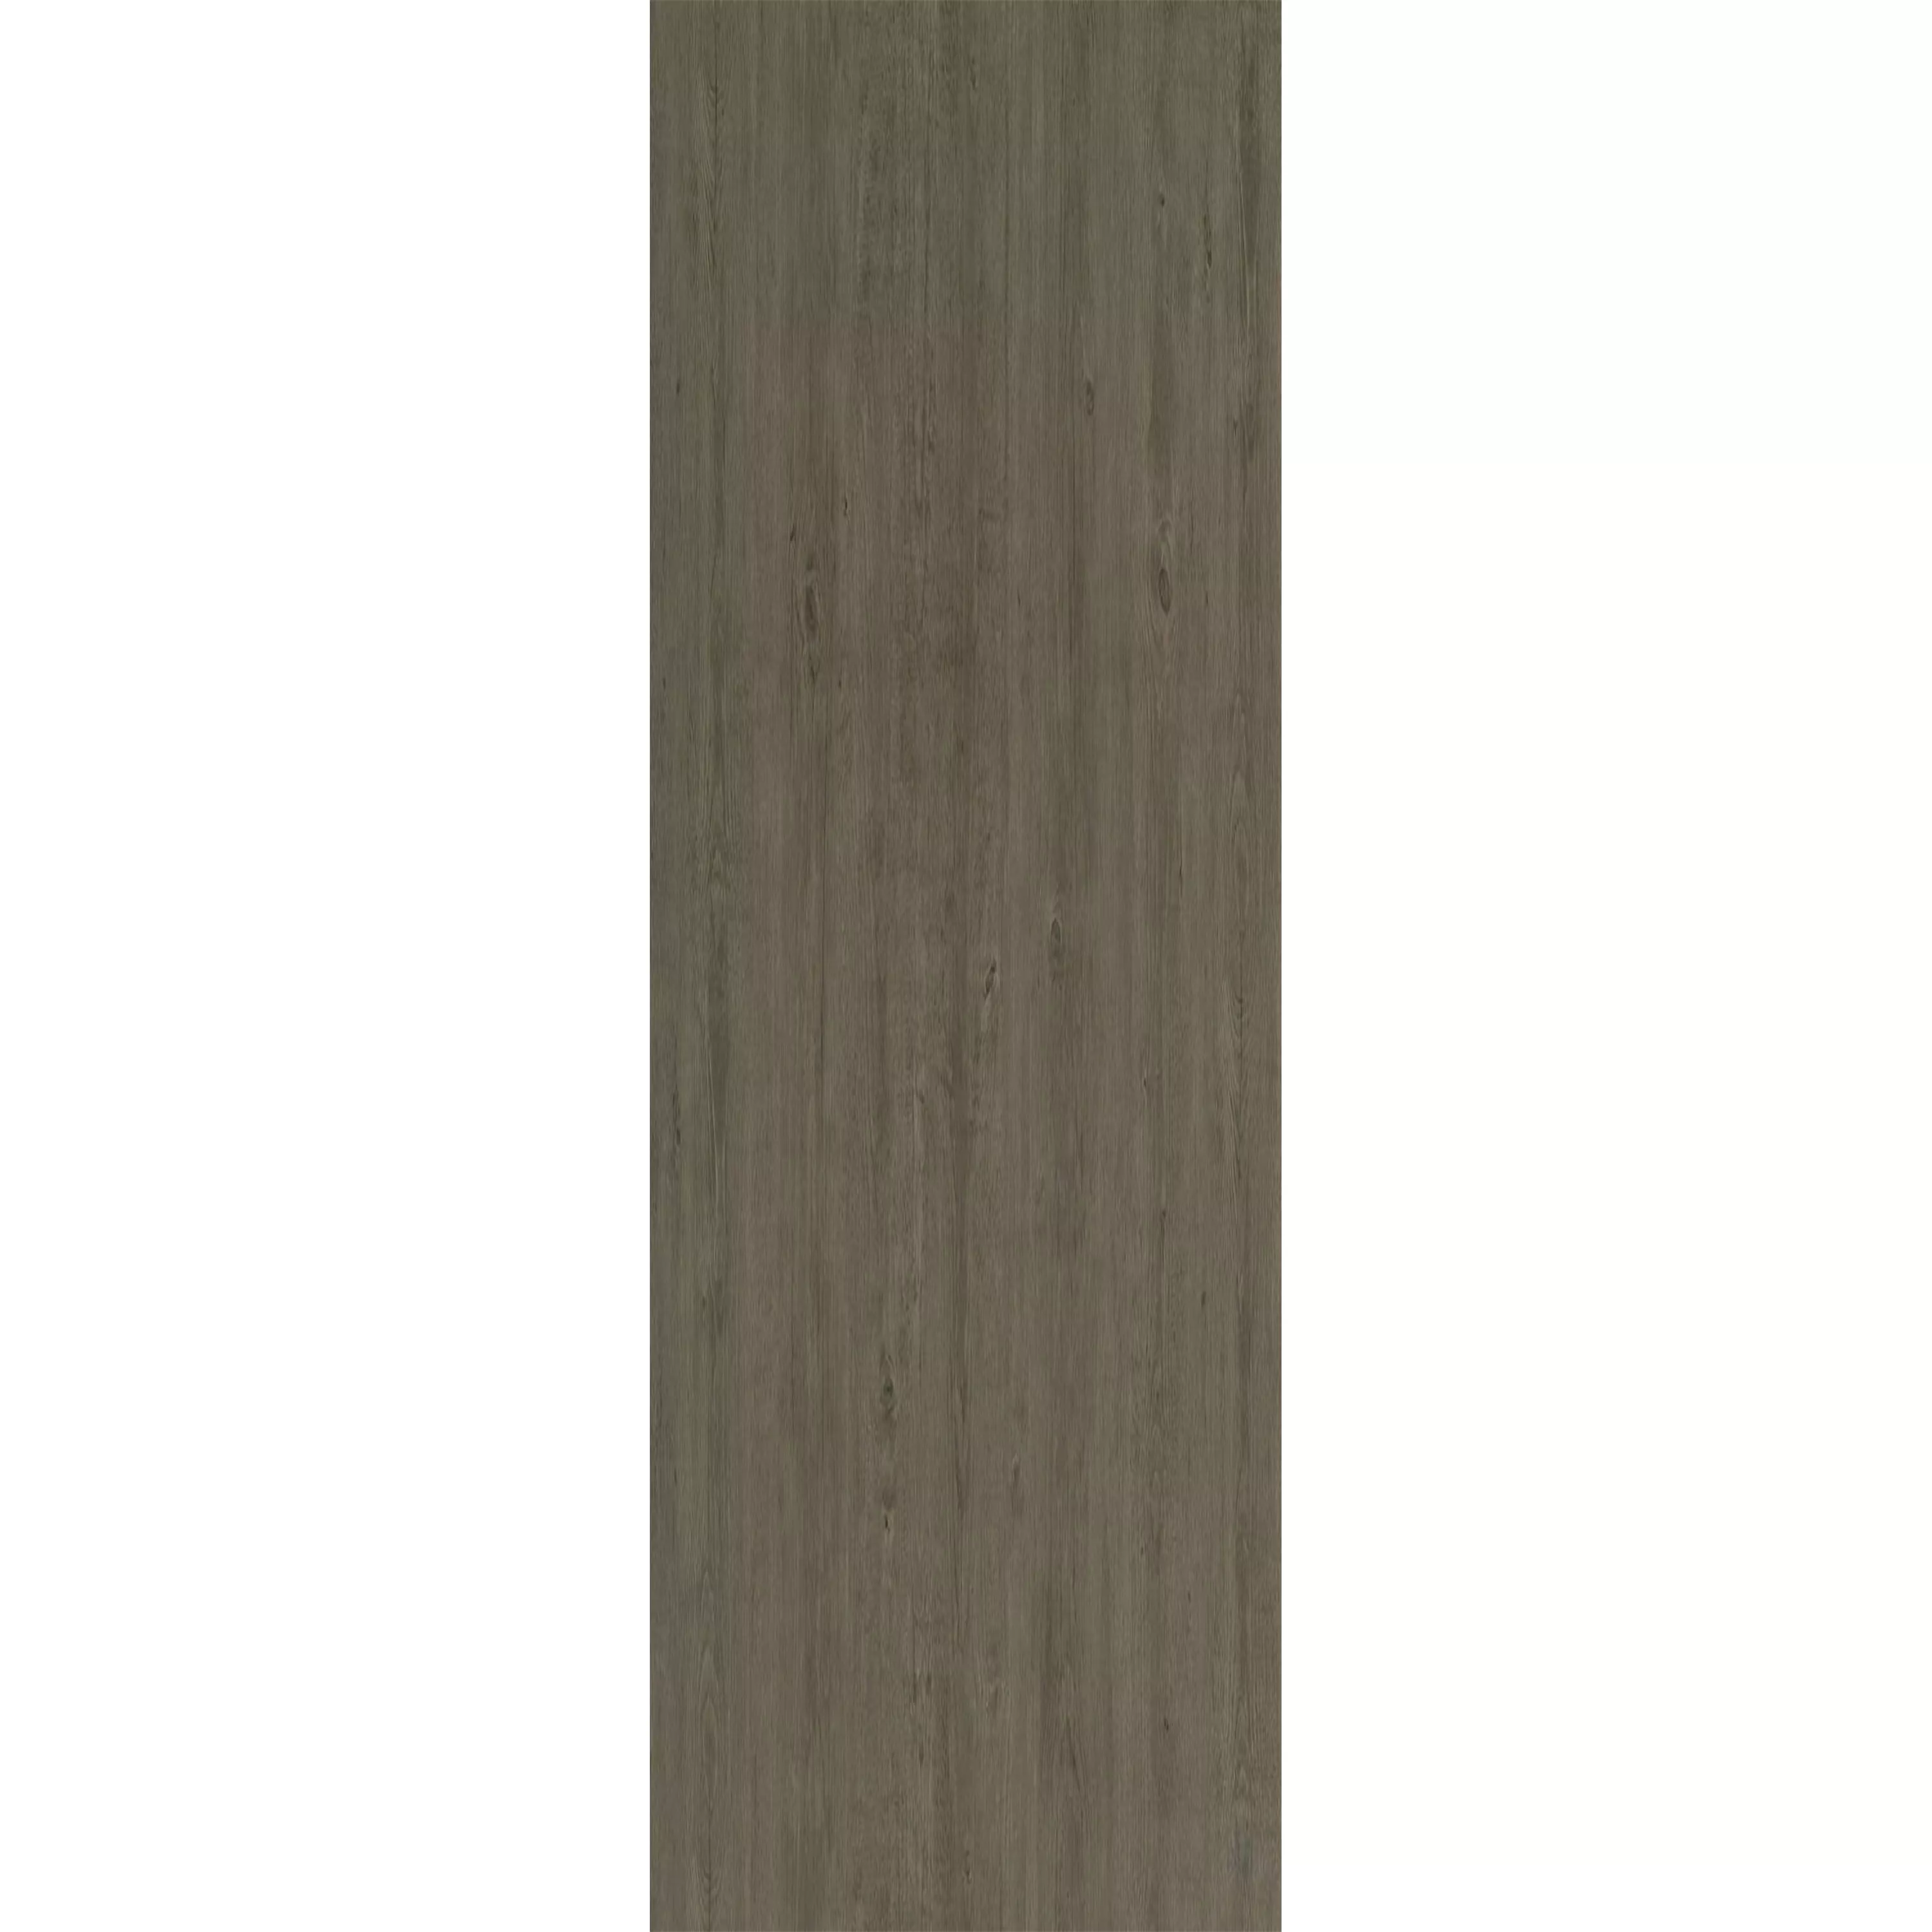 Δάπεδο Από Bινύλιο Σύστημα Κλικ Woodford Τεφρόχρουν Xρώμα 17,2x121cm